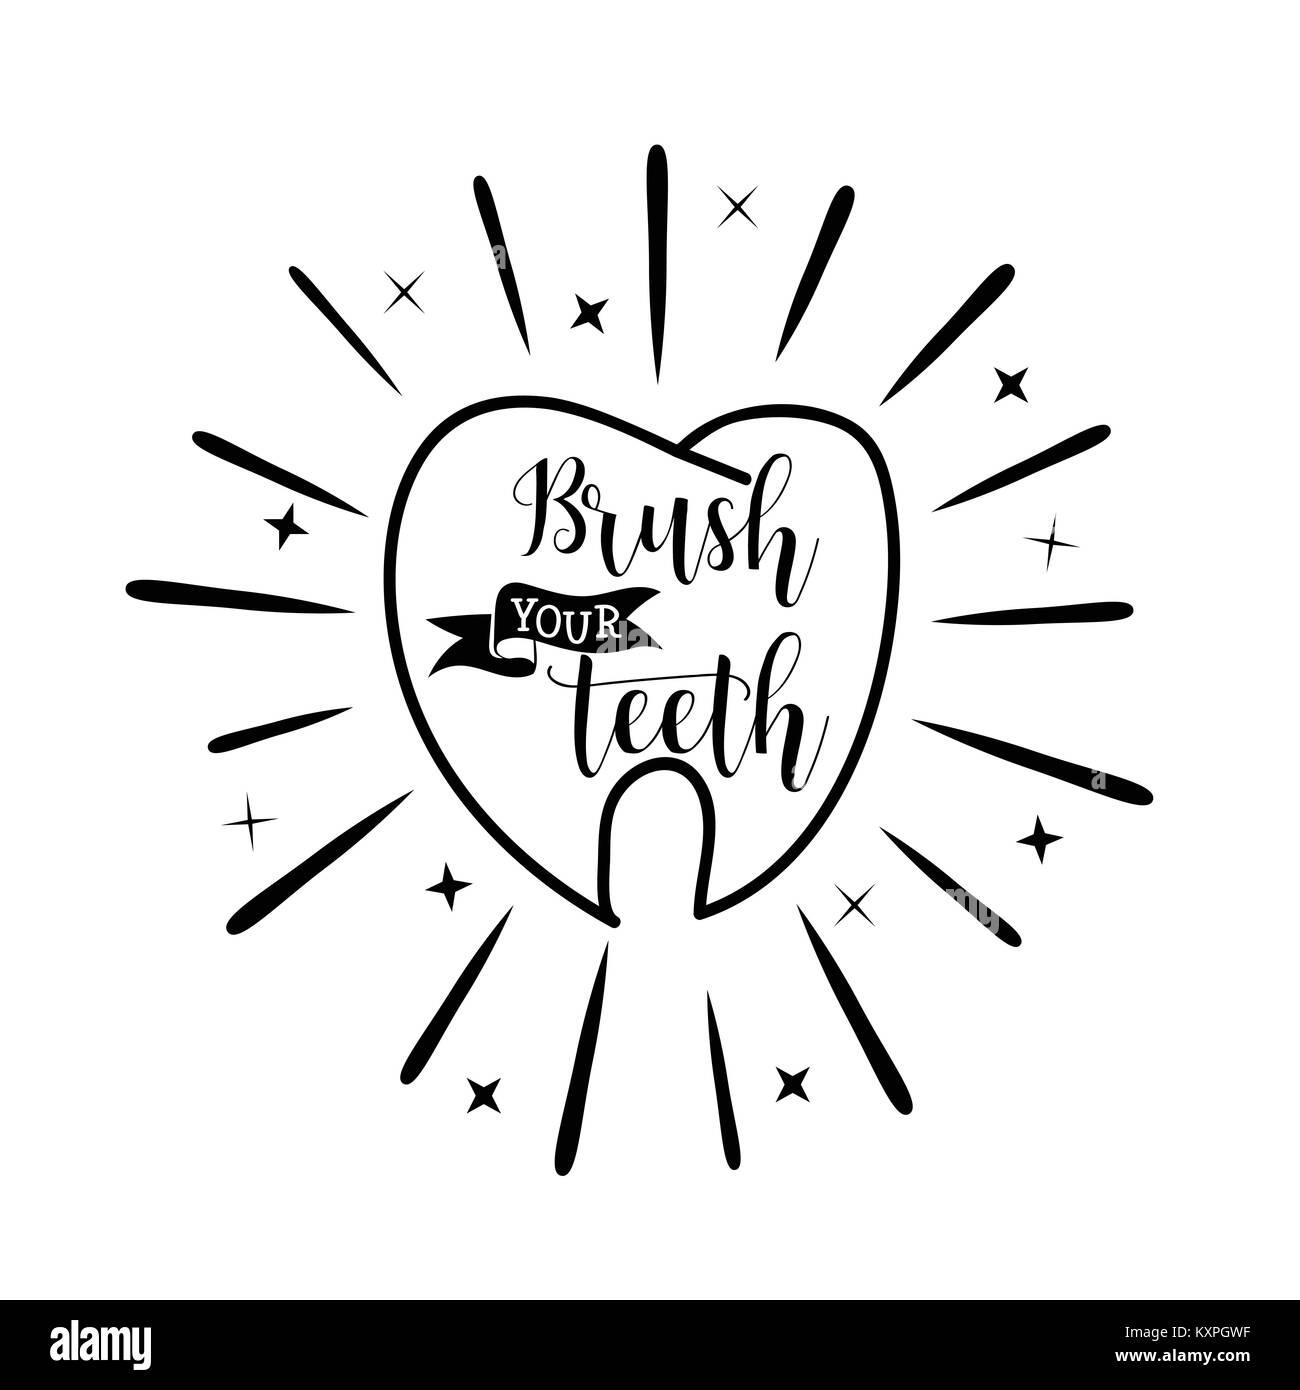 Putzen Sie Ihre Zähne. Zahnpflege motivationale Zitat Poster. Vektor handgezeichnete Illustrationen. Stock Vektor